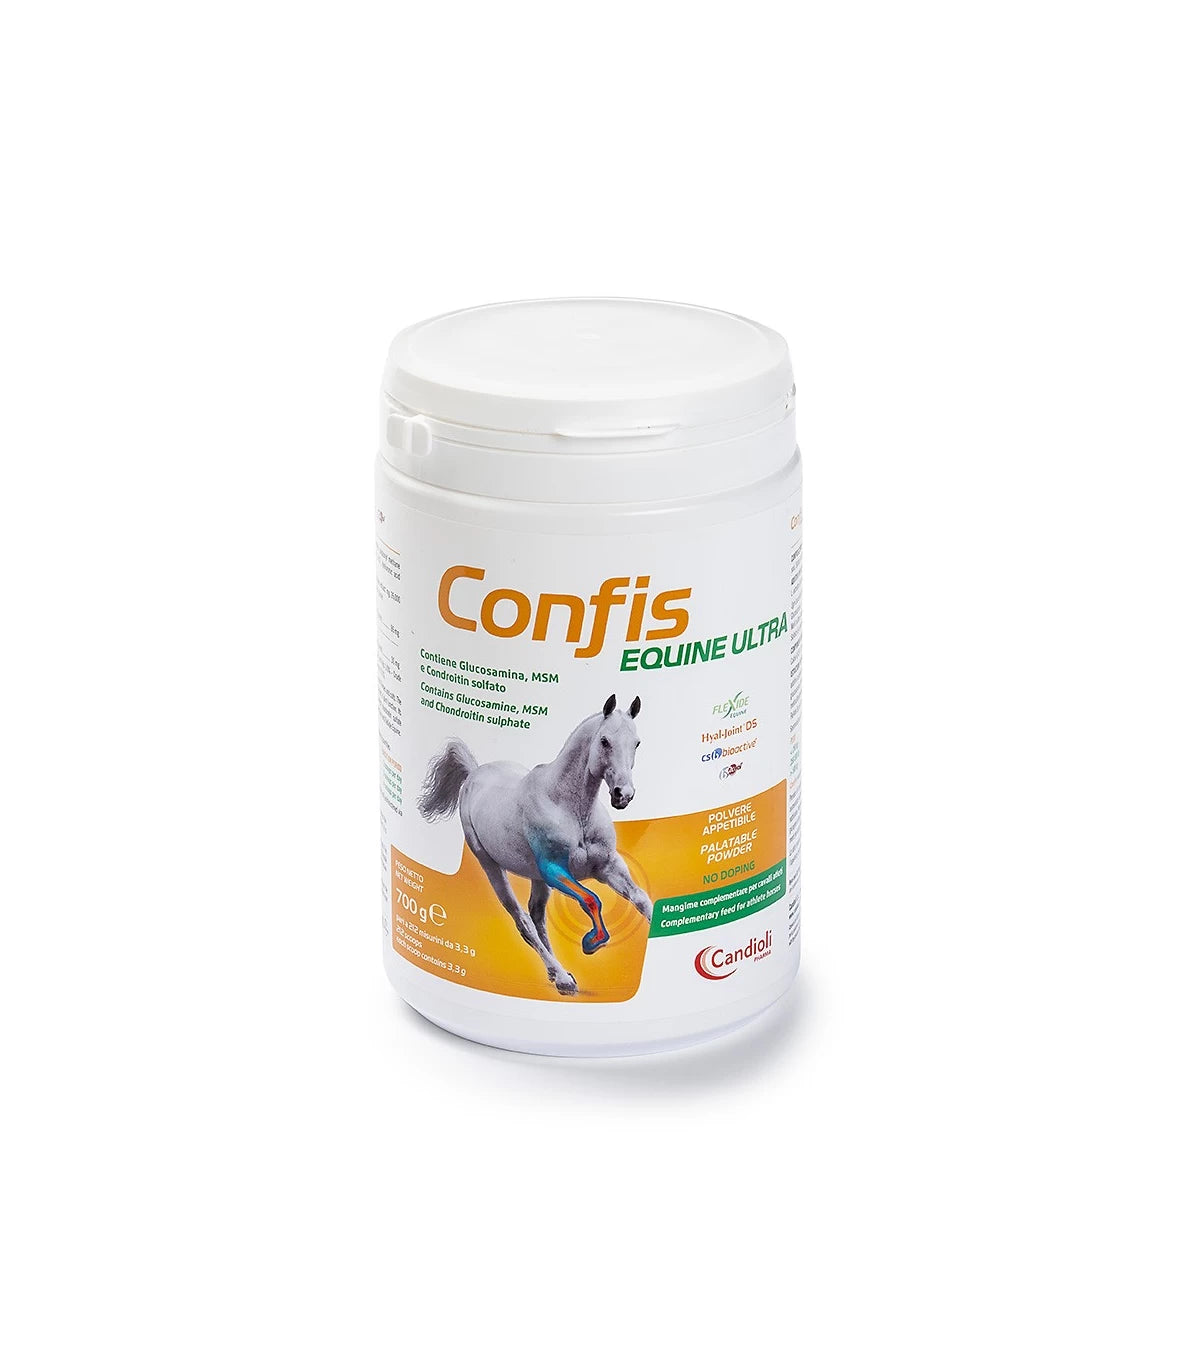 CONFIS EQUINE ULTRA 700 gr – Benessere articolare del cavallo